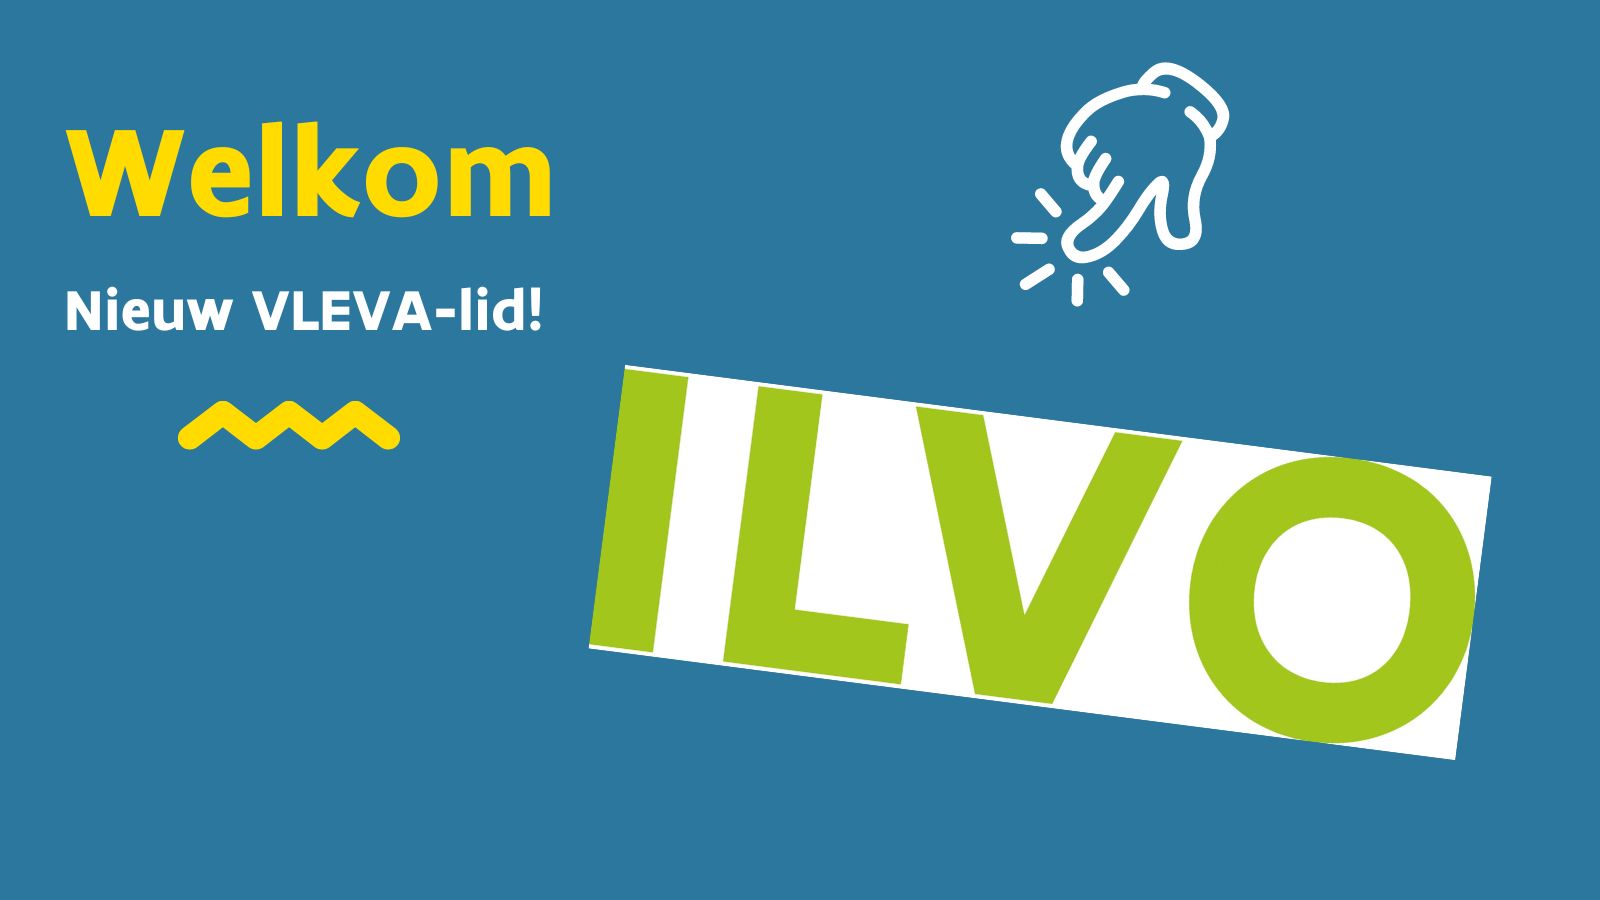 Maak kennis met nieuw VLEVA-lid ILVO!